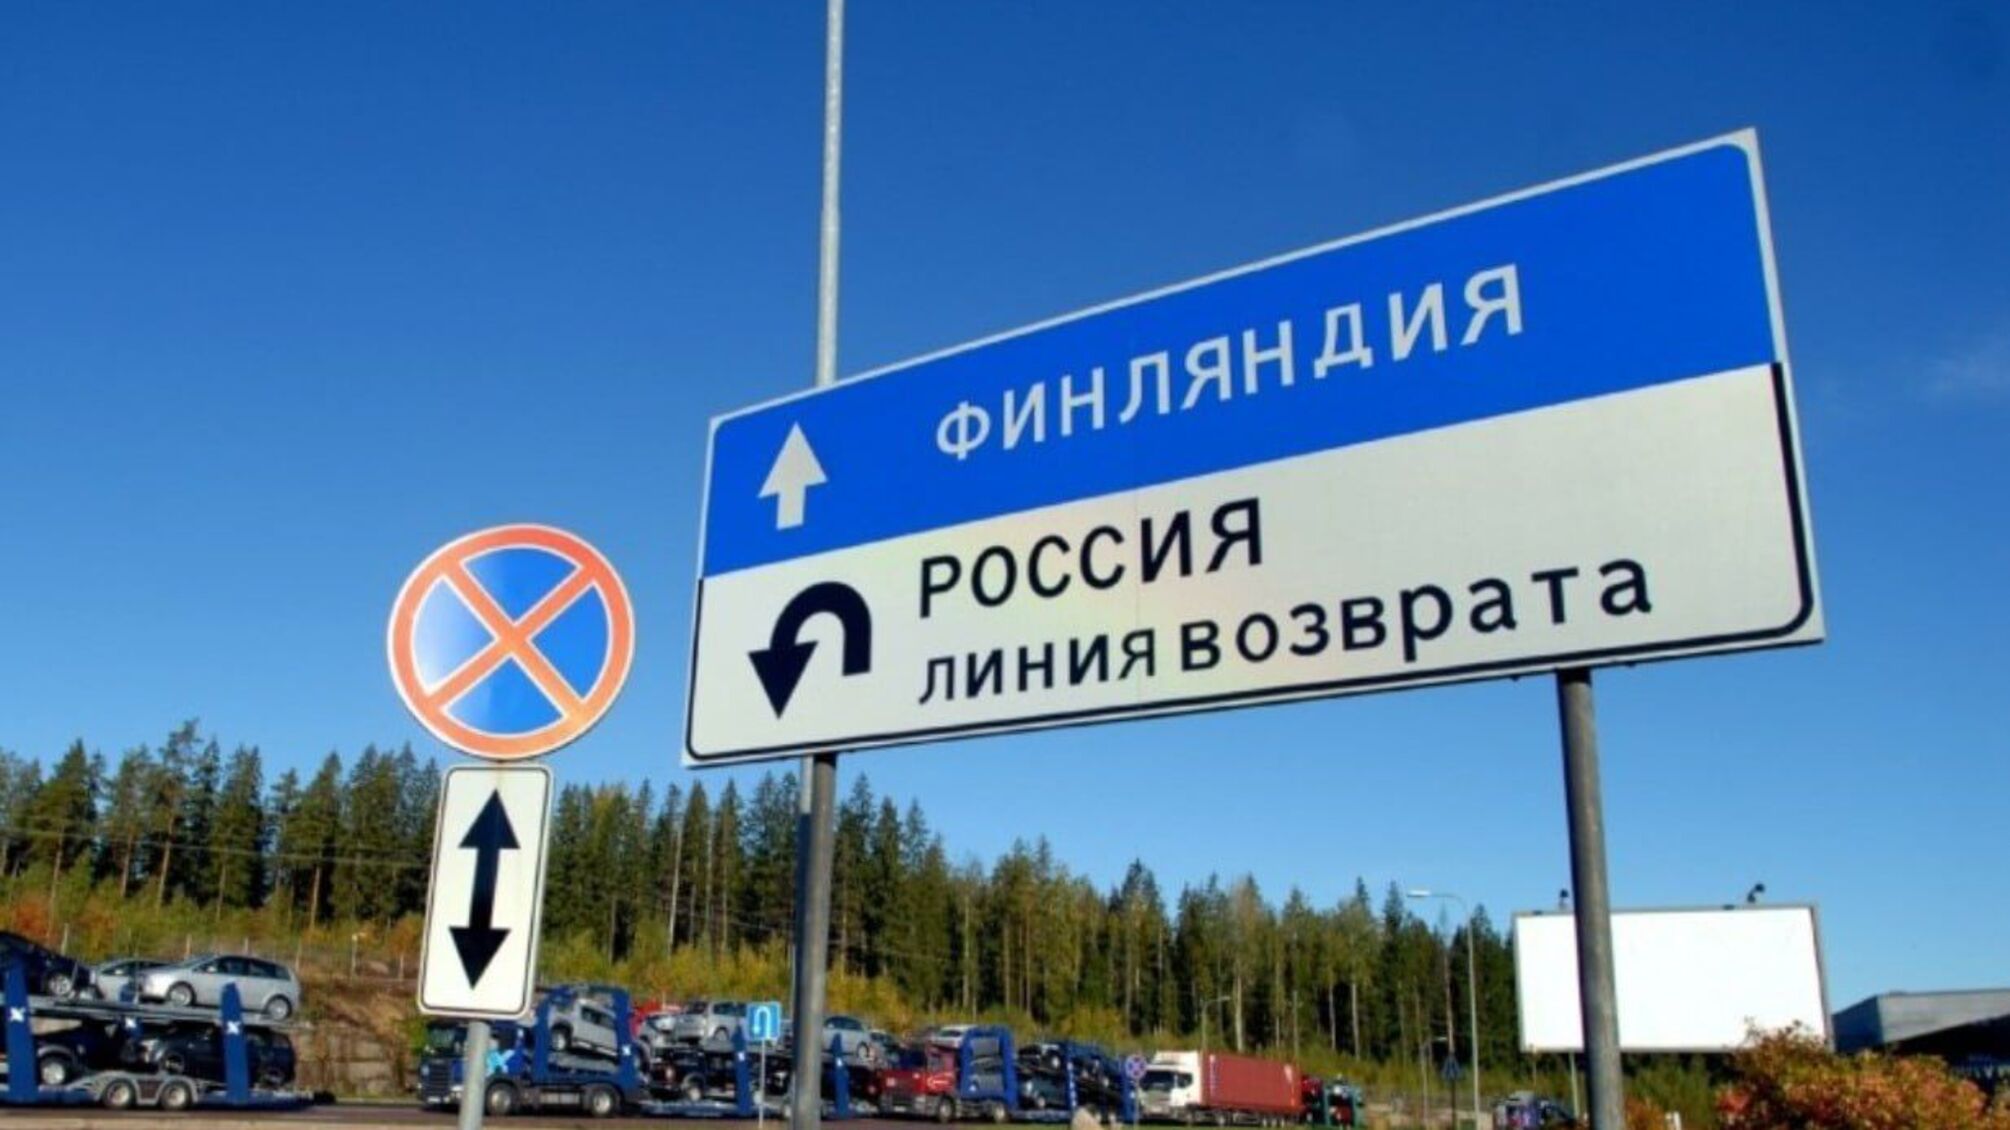 Фінляндія безстроково закриє кордон із росією